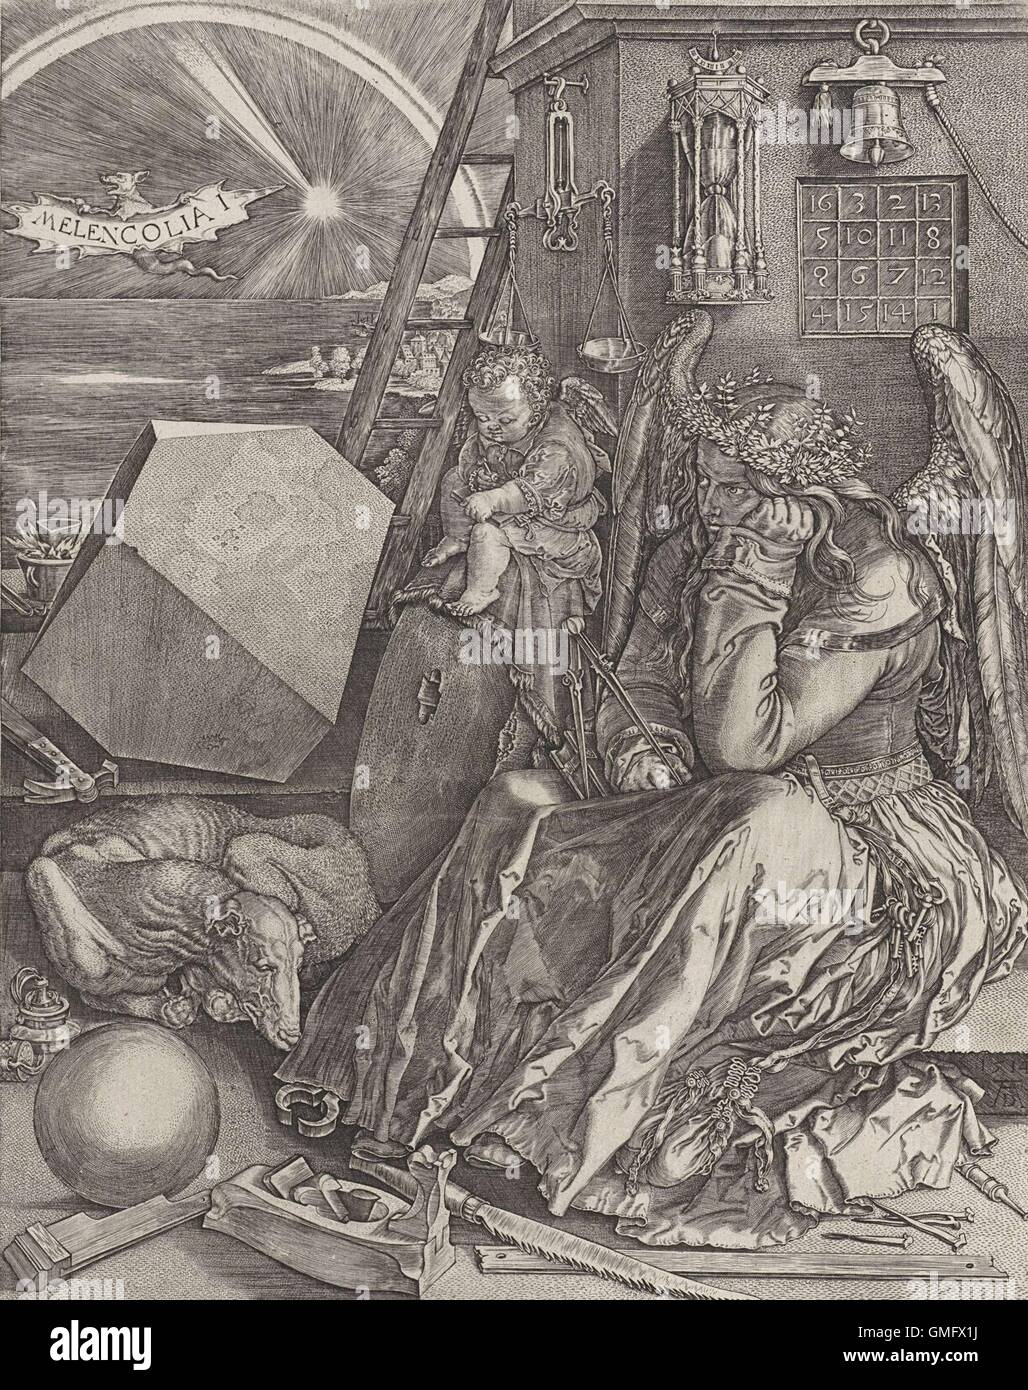 Melancholie, von Johannes Wierix nach Dürer, 1602, niederländischer drucken. Kopiert aus Durer Original von 1514. Die allegorische Figur des melancholischen Temperament als eine nachdenkliche geflügelte Frauengestalt. (BSLOC 2016 2 123) Stockfoto